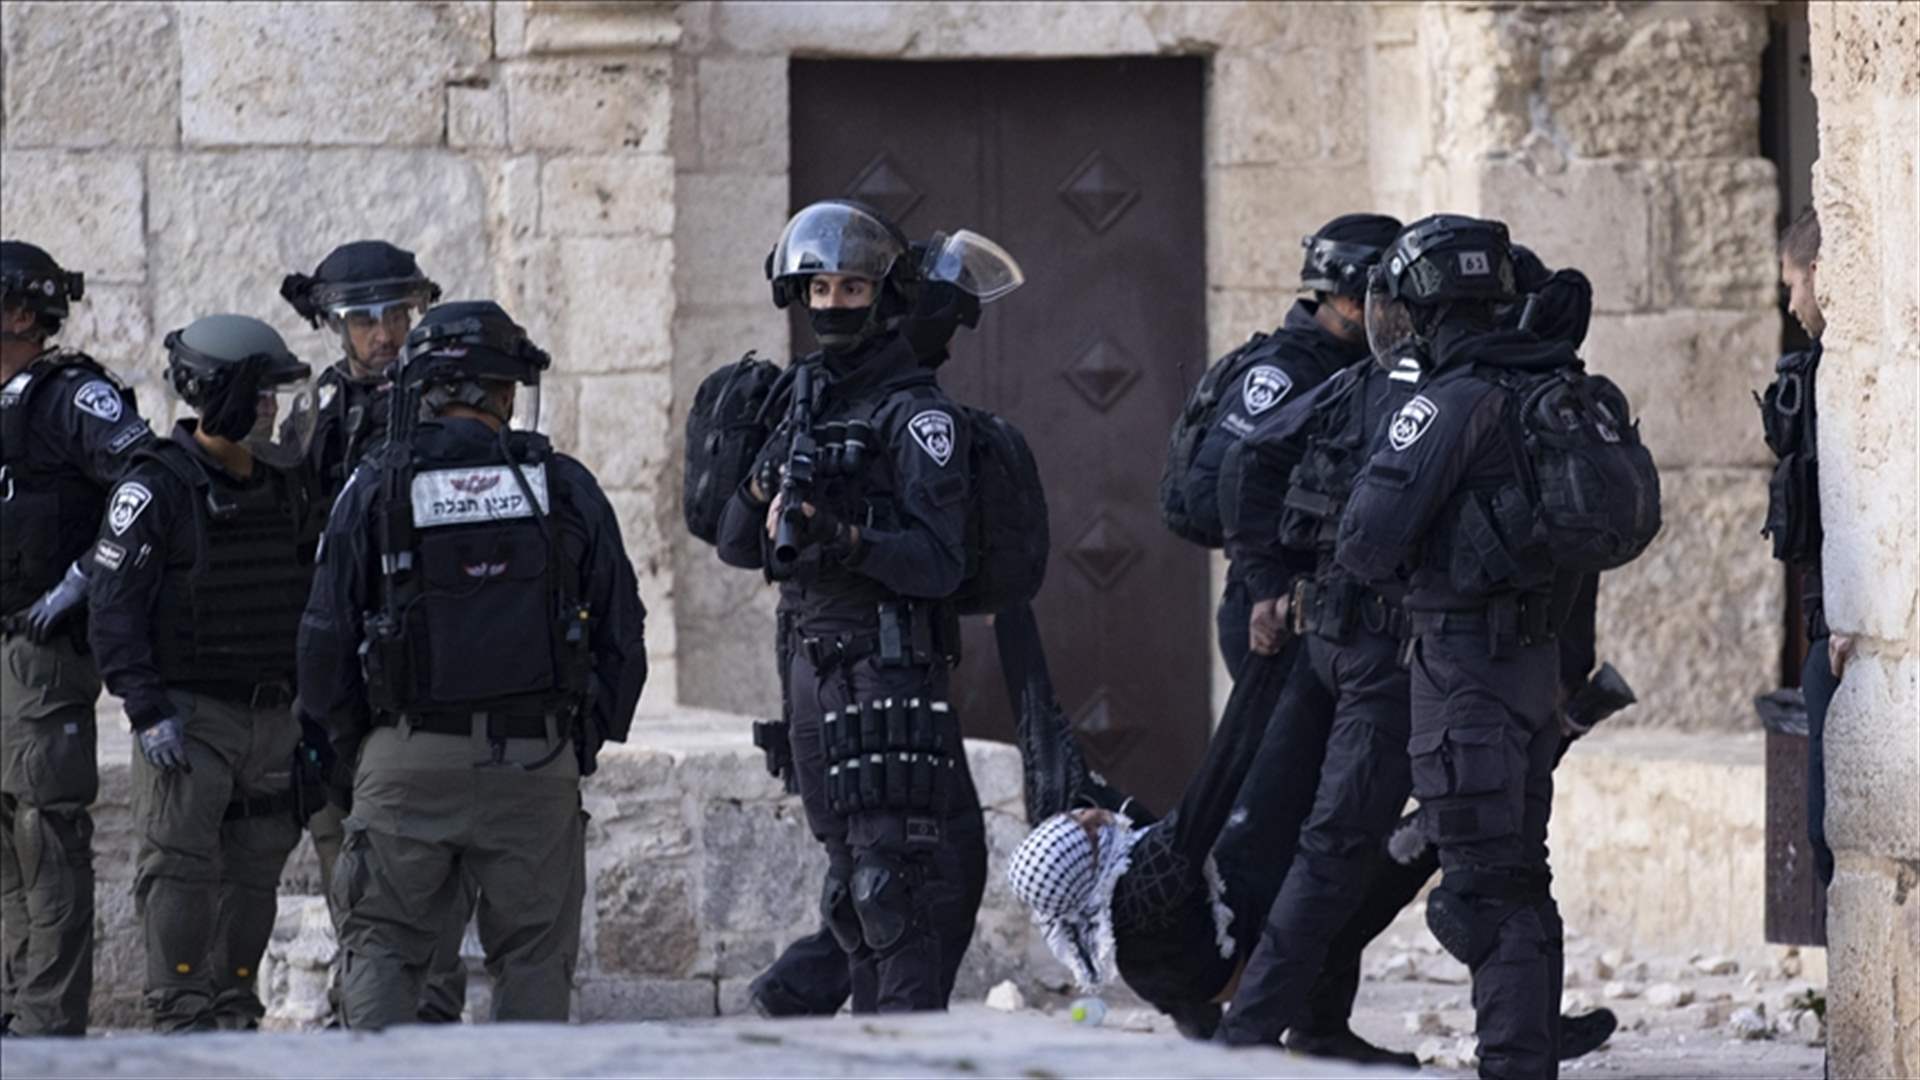 الشرطة الإسرائيلية تعلن تفجير منزل فلسطيني نفذ هجومًا في القدس الشرقية مطلع العام